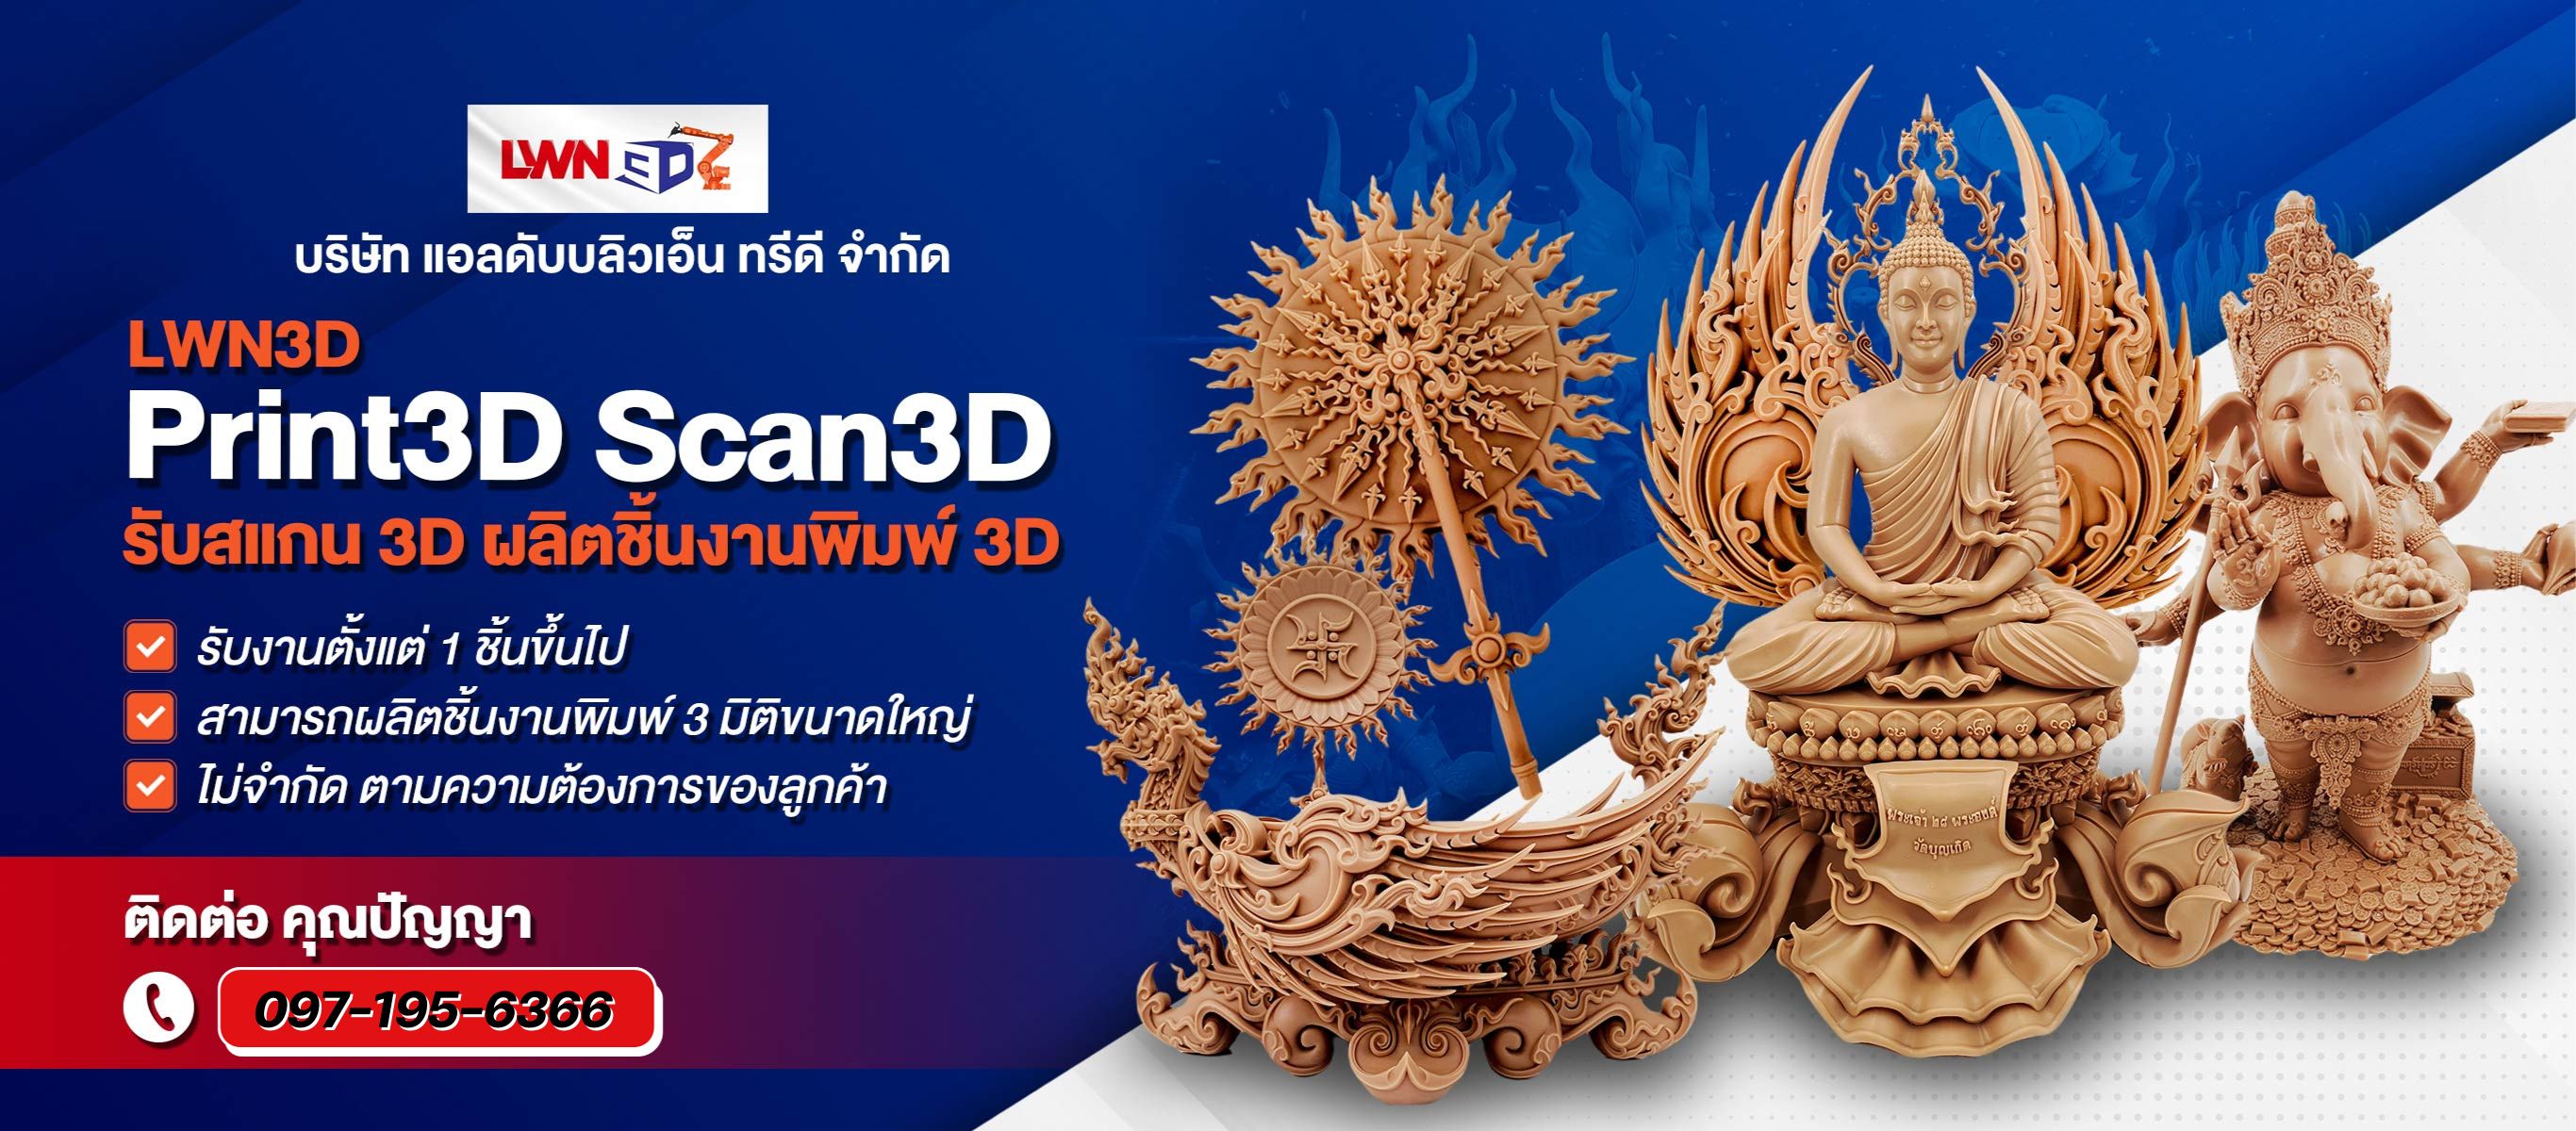 บริษัทรับสแกน 3D ผลิตชิ้นงานพิมพ์ 3D ขนาดใหญ่ สมุทรสาคร